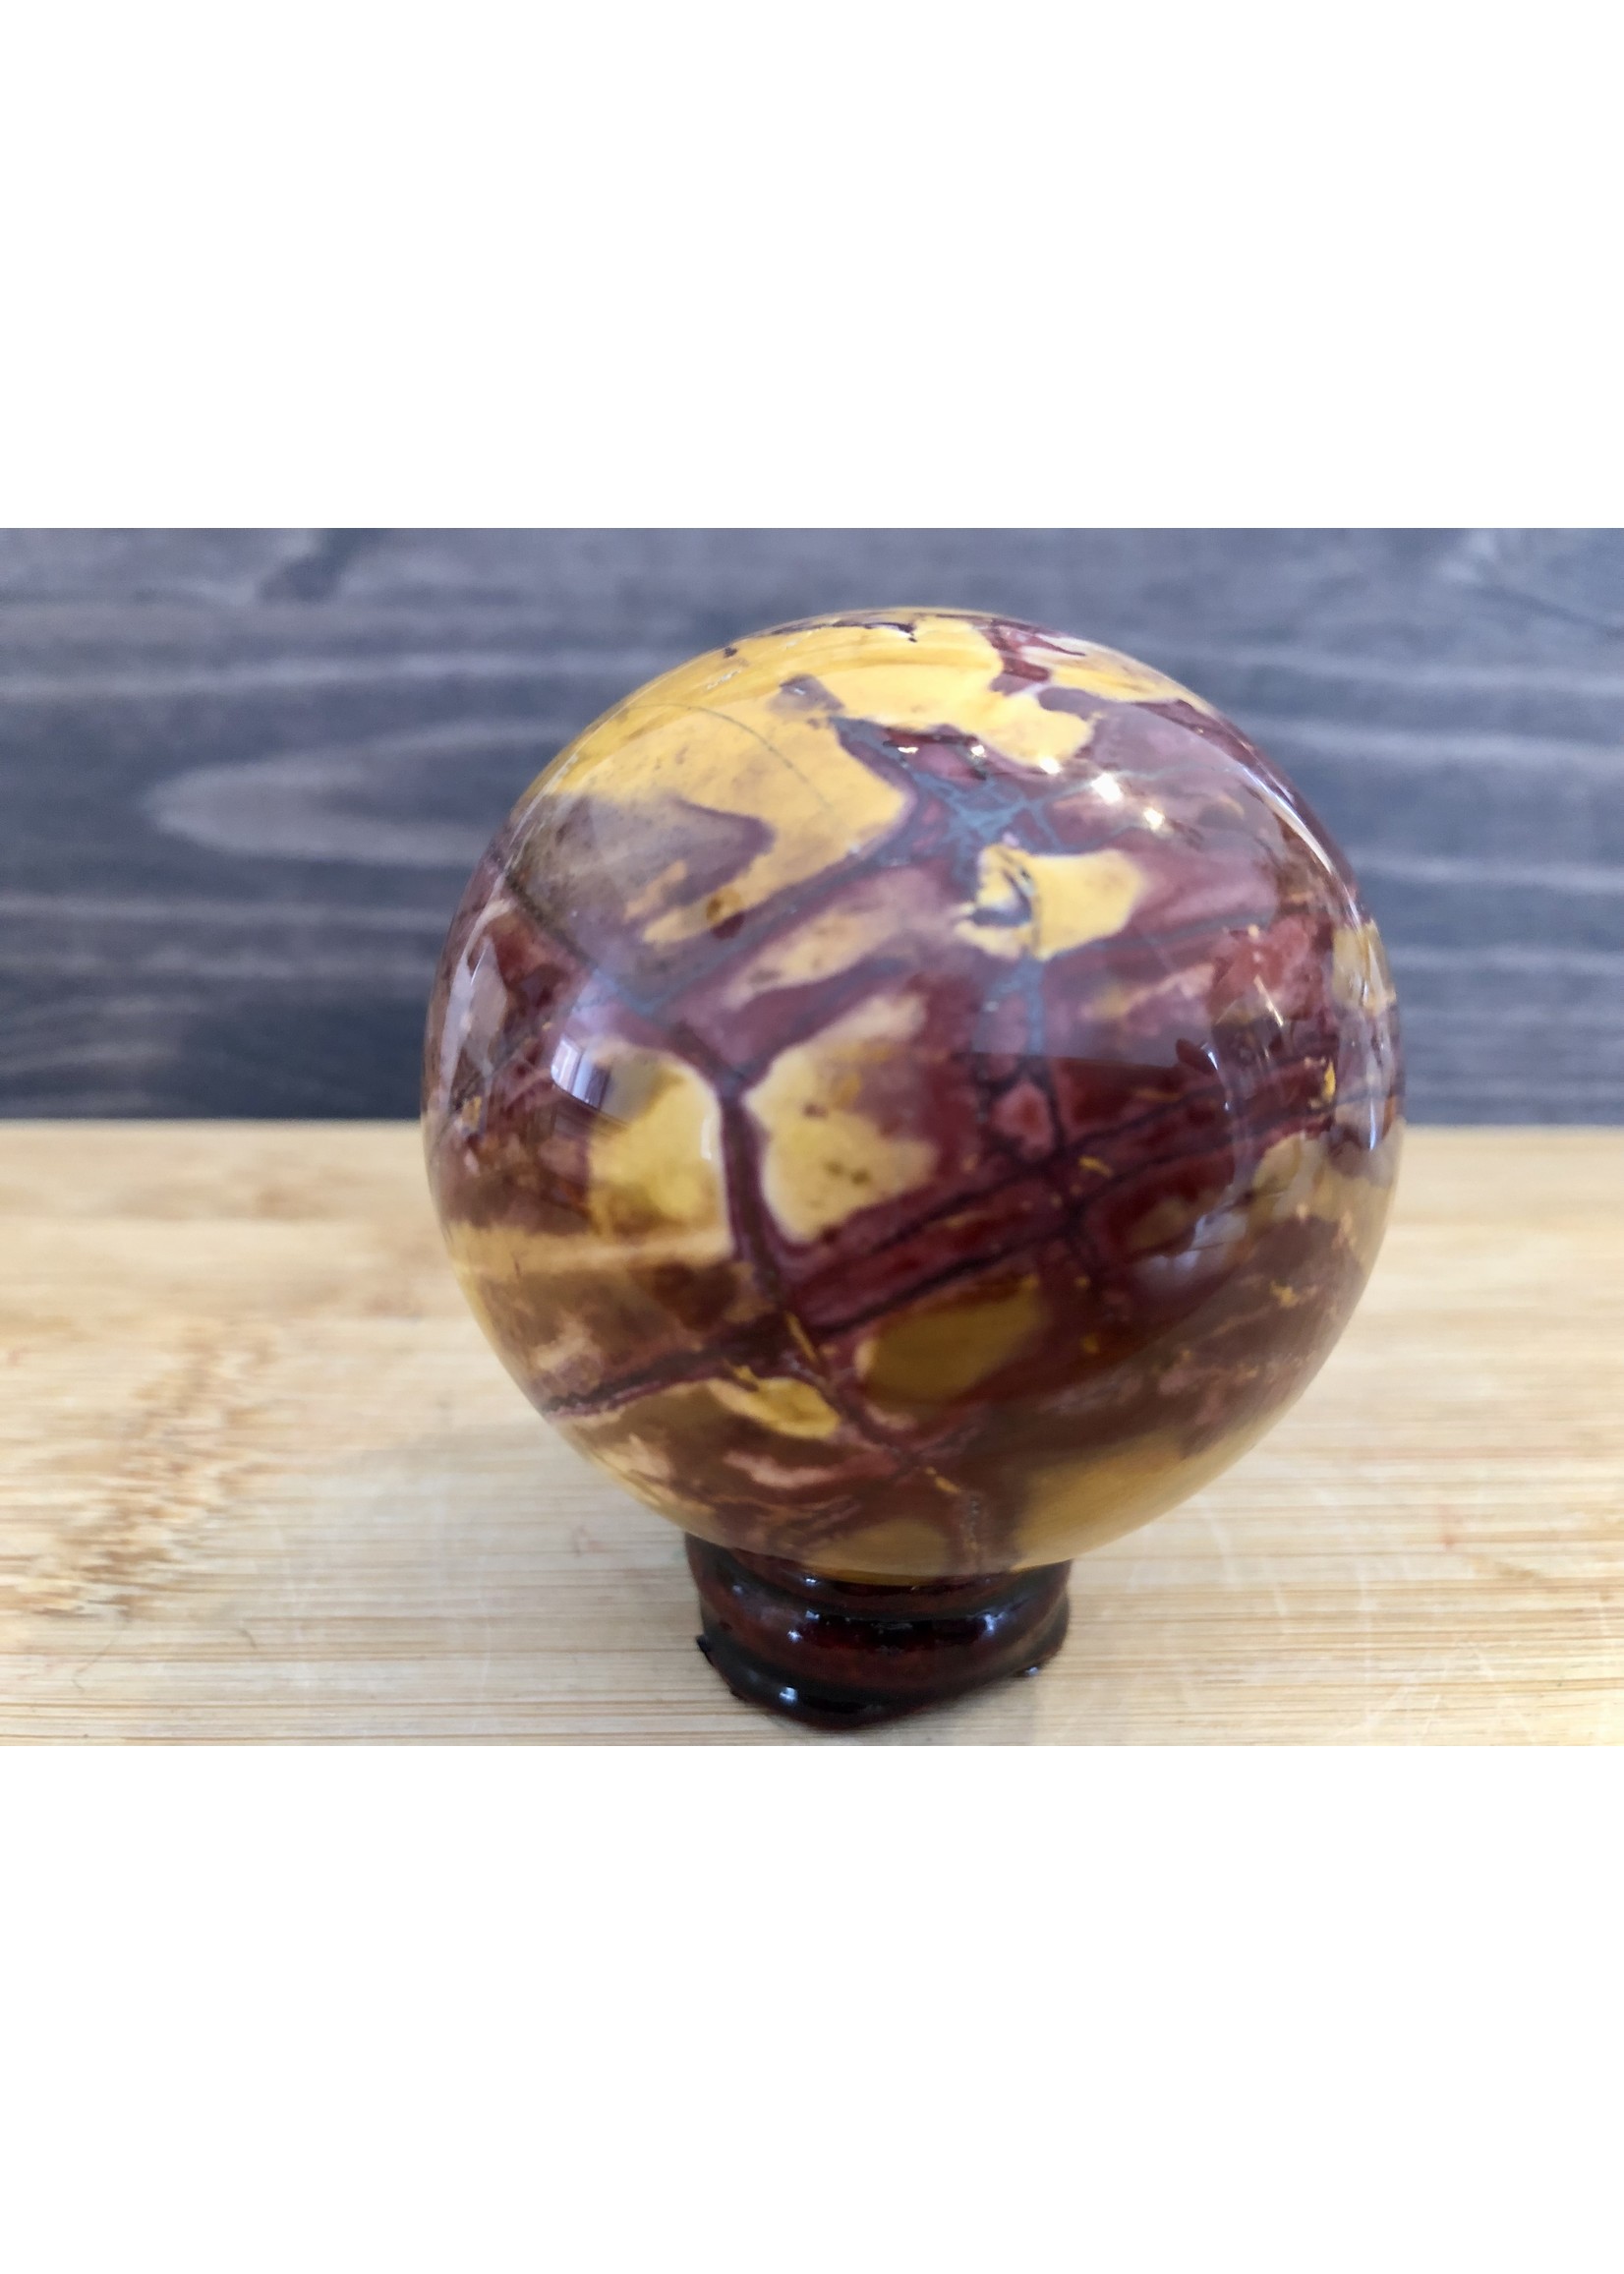 large mookaite jasper sphere, crystal ball mookaite jasper